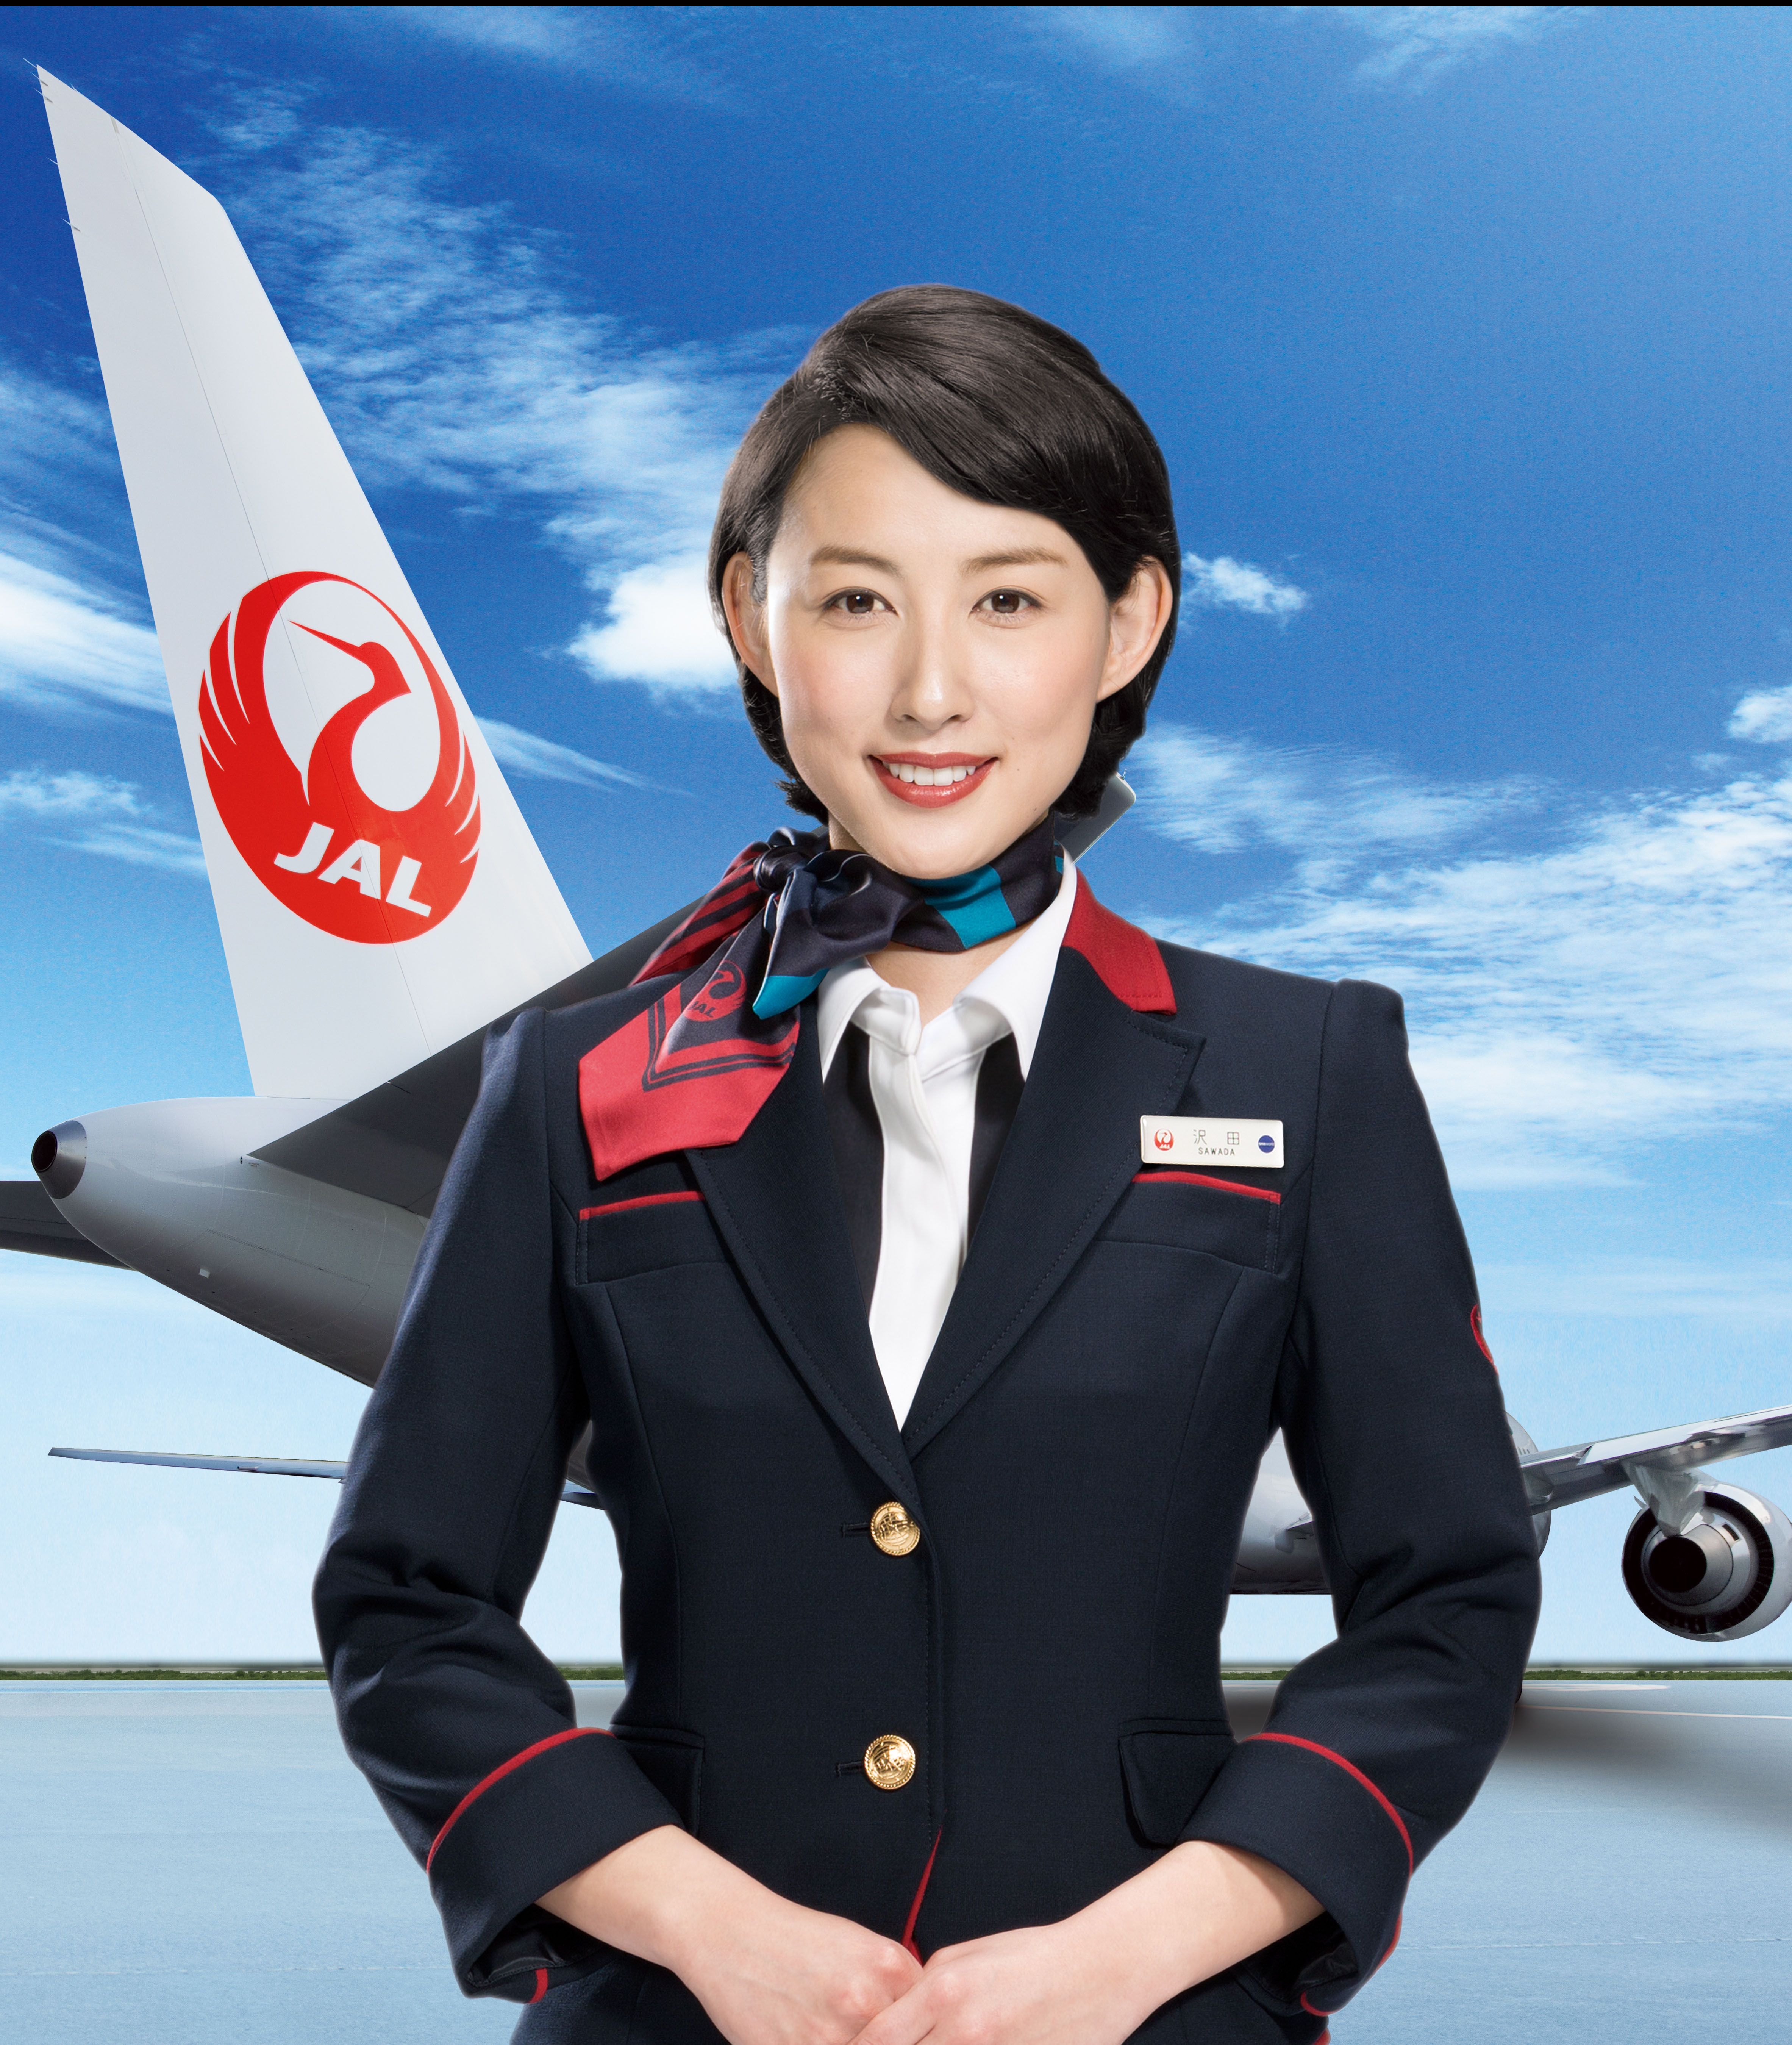 Japan airlines – одна из крупнейших авиакомпаний азии